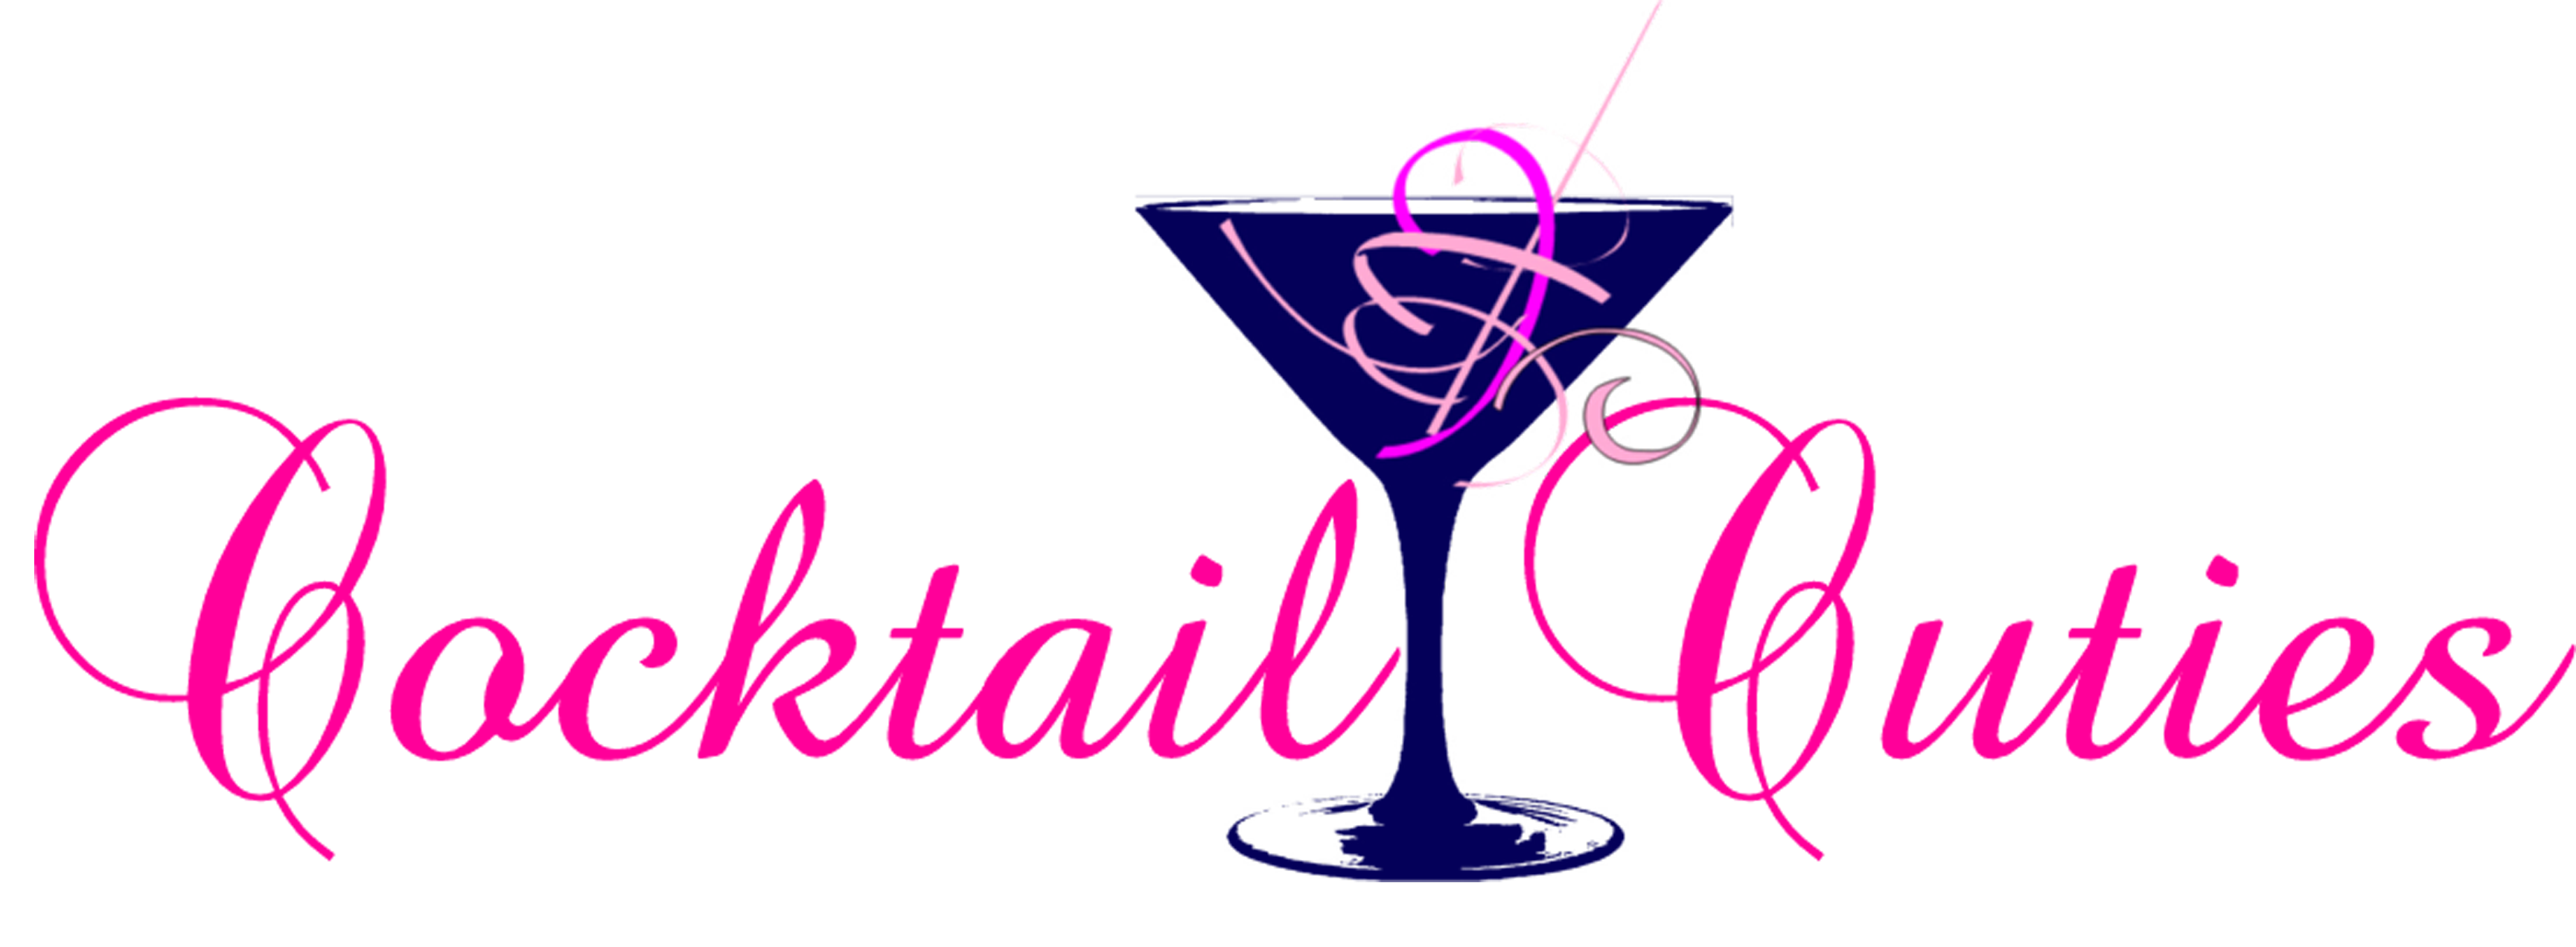 martini clipart cocktail reception